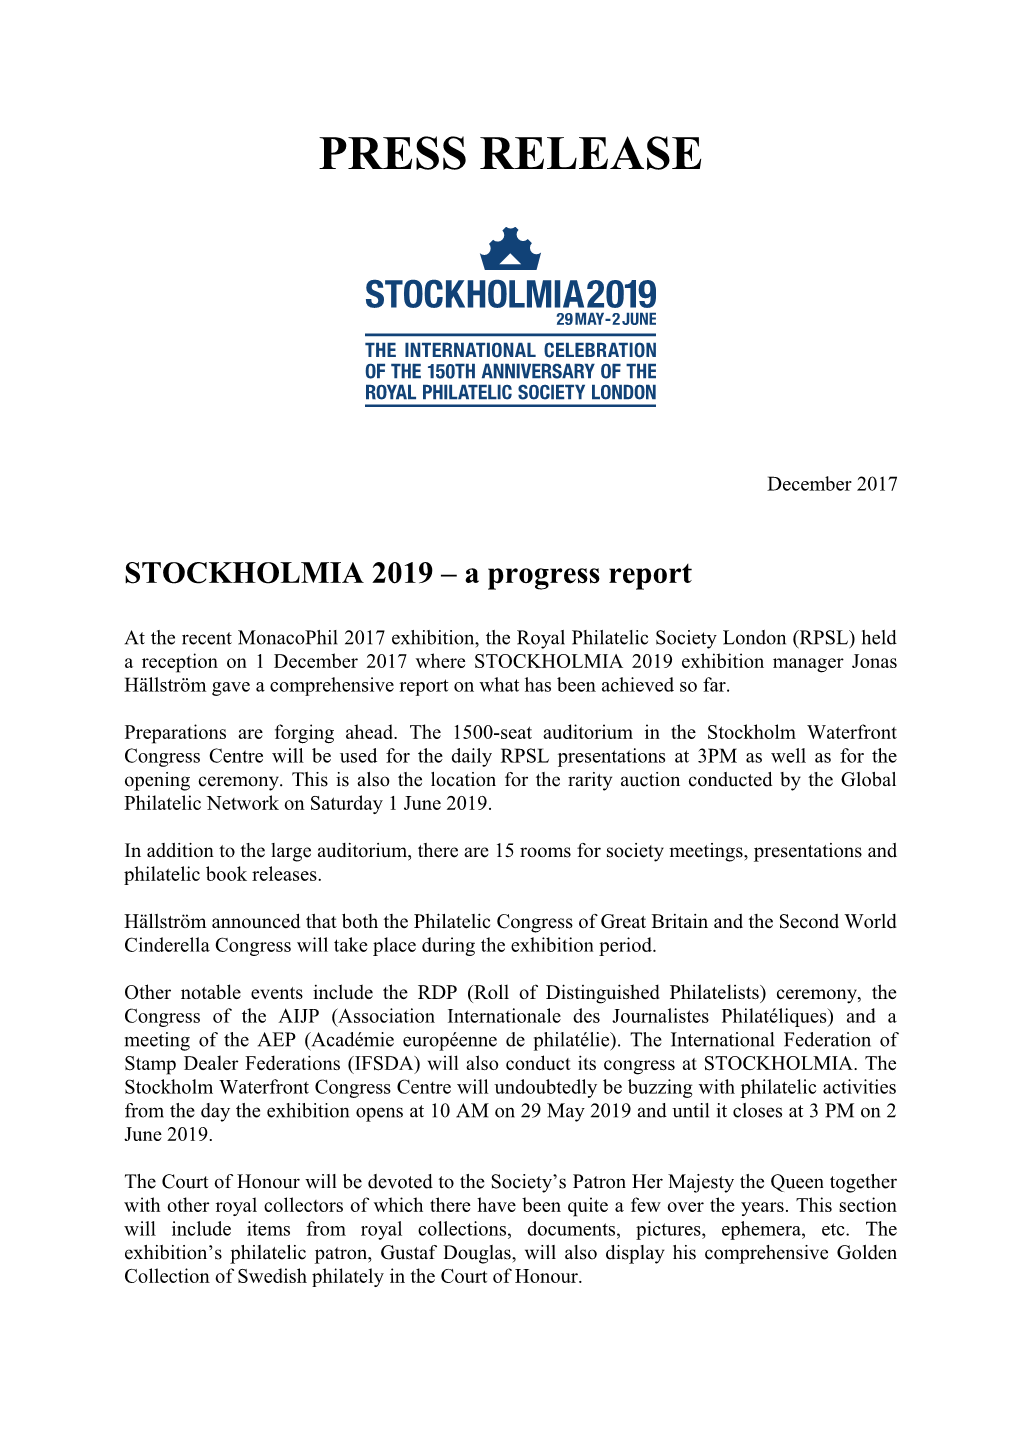 STOCKHOLMIA 2019 a Progress Report